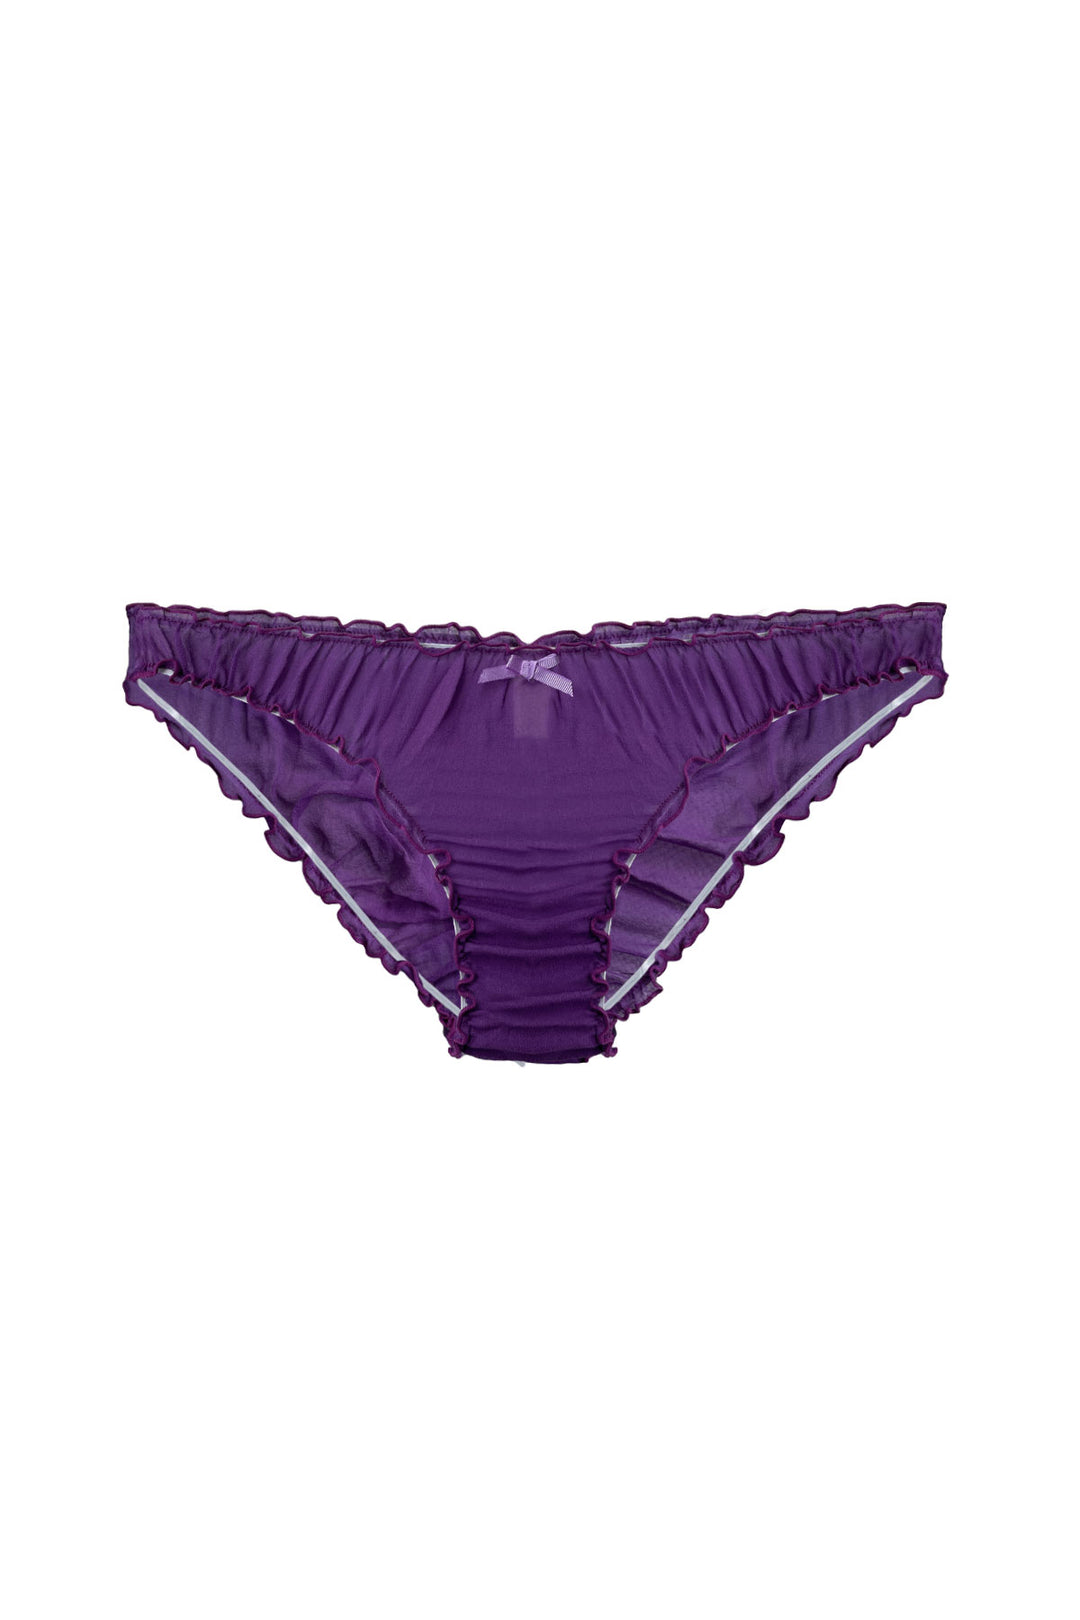 Ruffle knickers in silk chiffon in violet